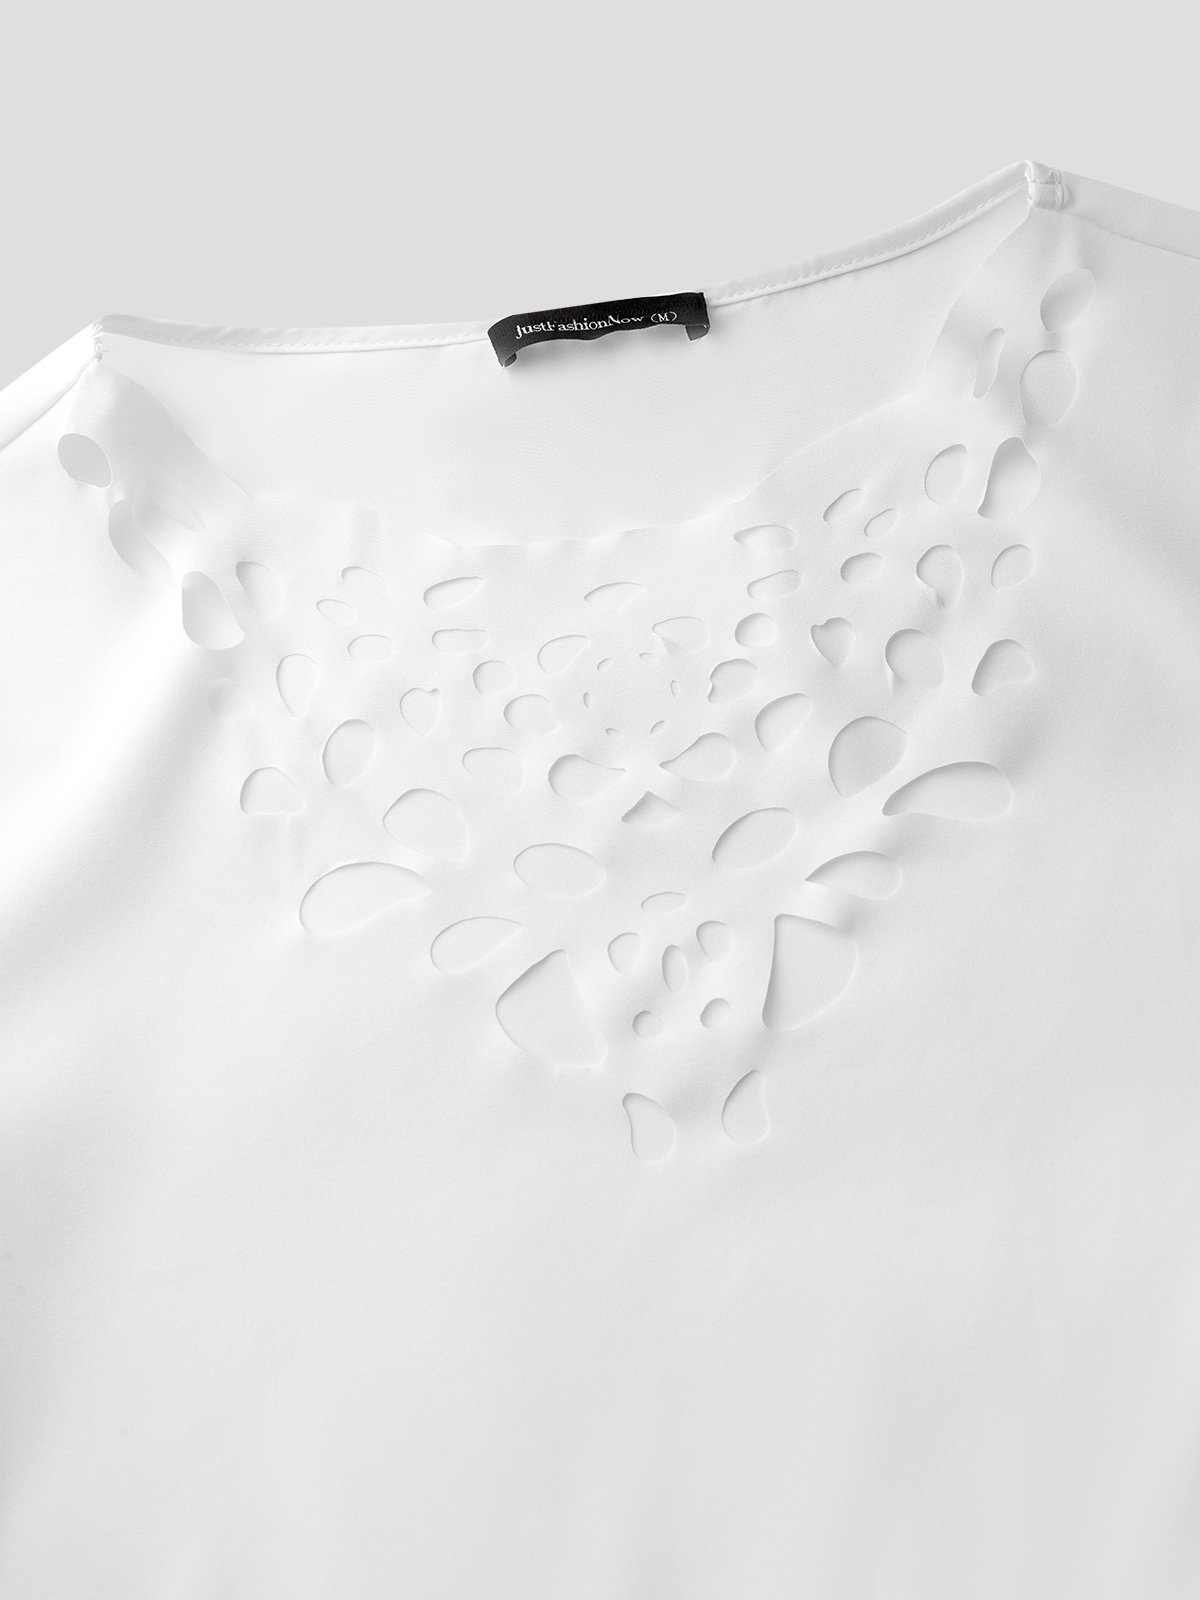 Women's Casual Burnt Design Short Sleeve T-Shirt